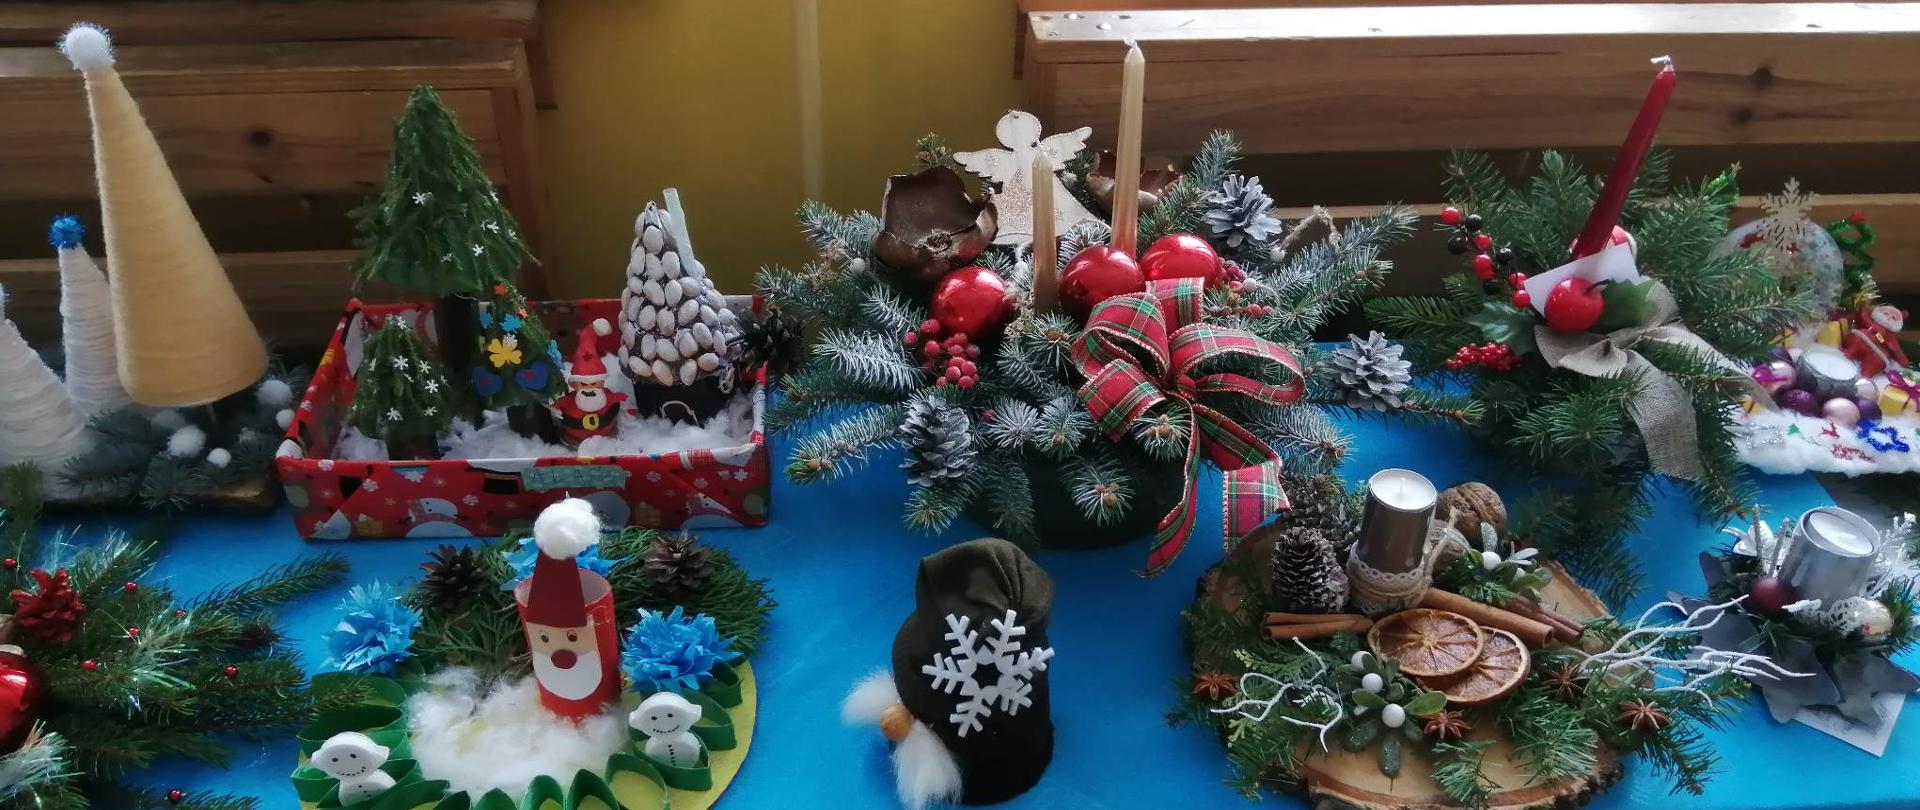 Na zdjęciu stół przykryty obrusem, a na nim widać różne formy stroików świątecznych przesłanych jako prace konkursowe.